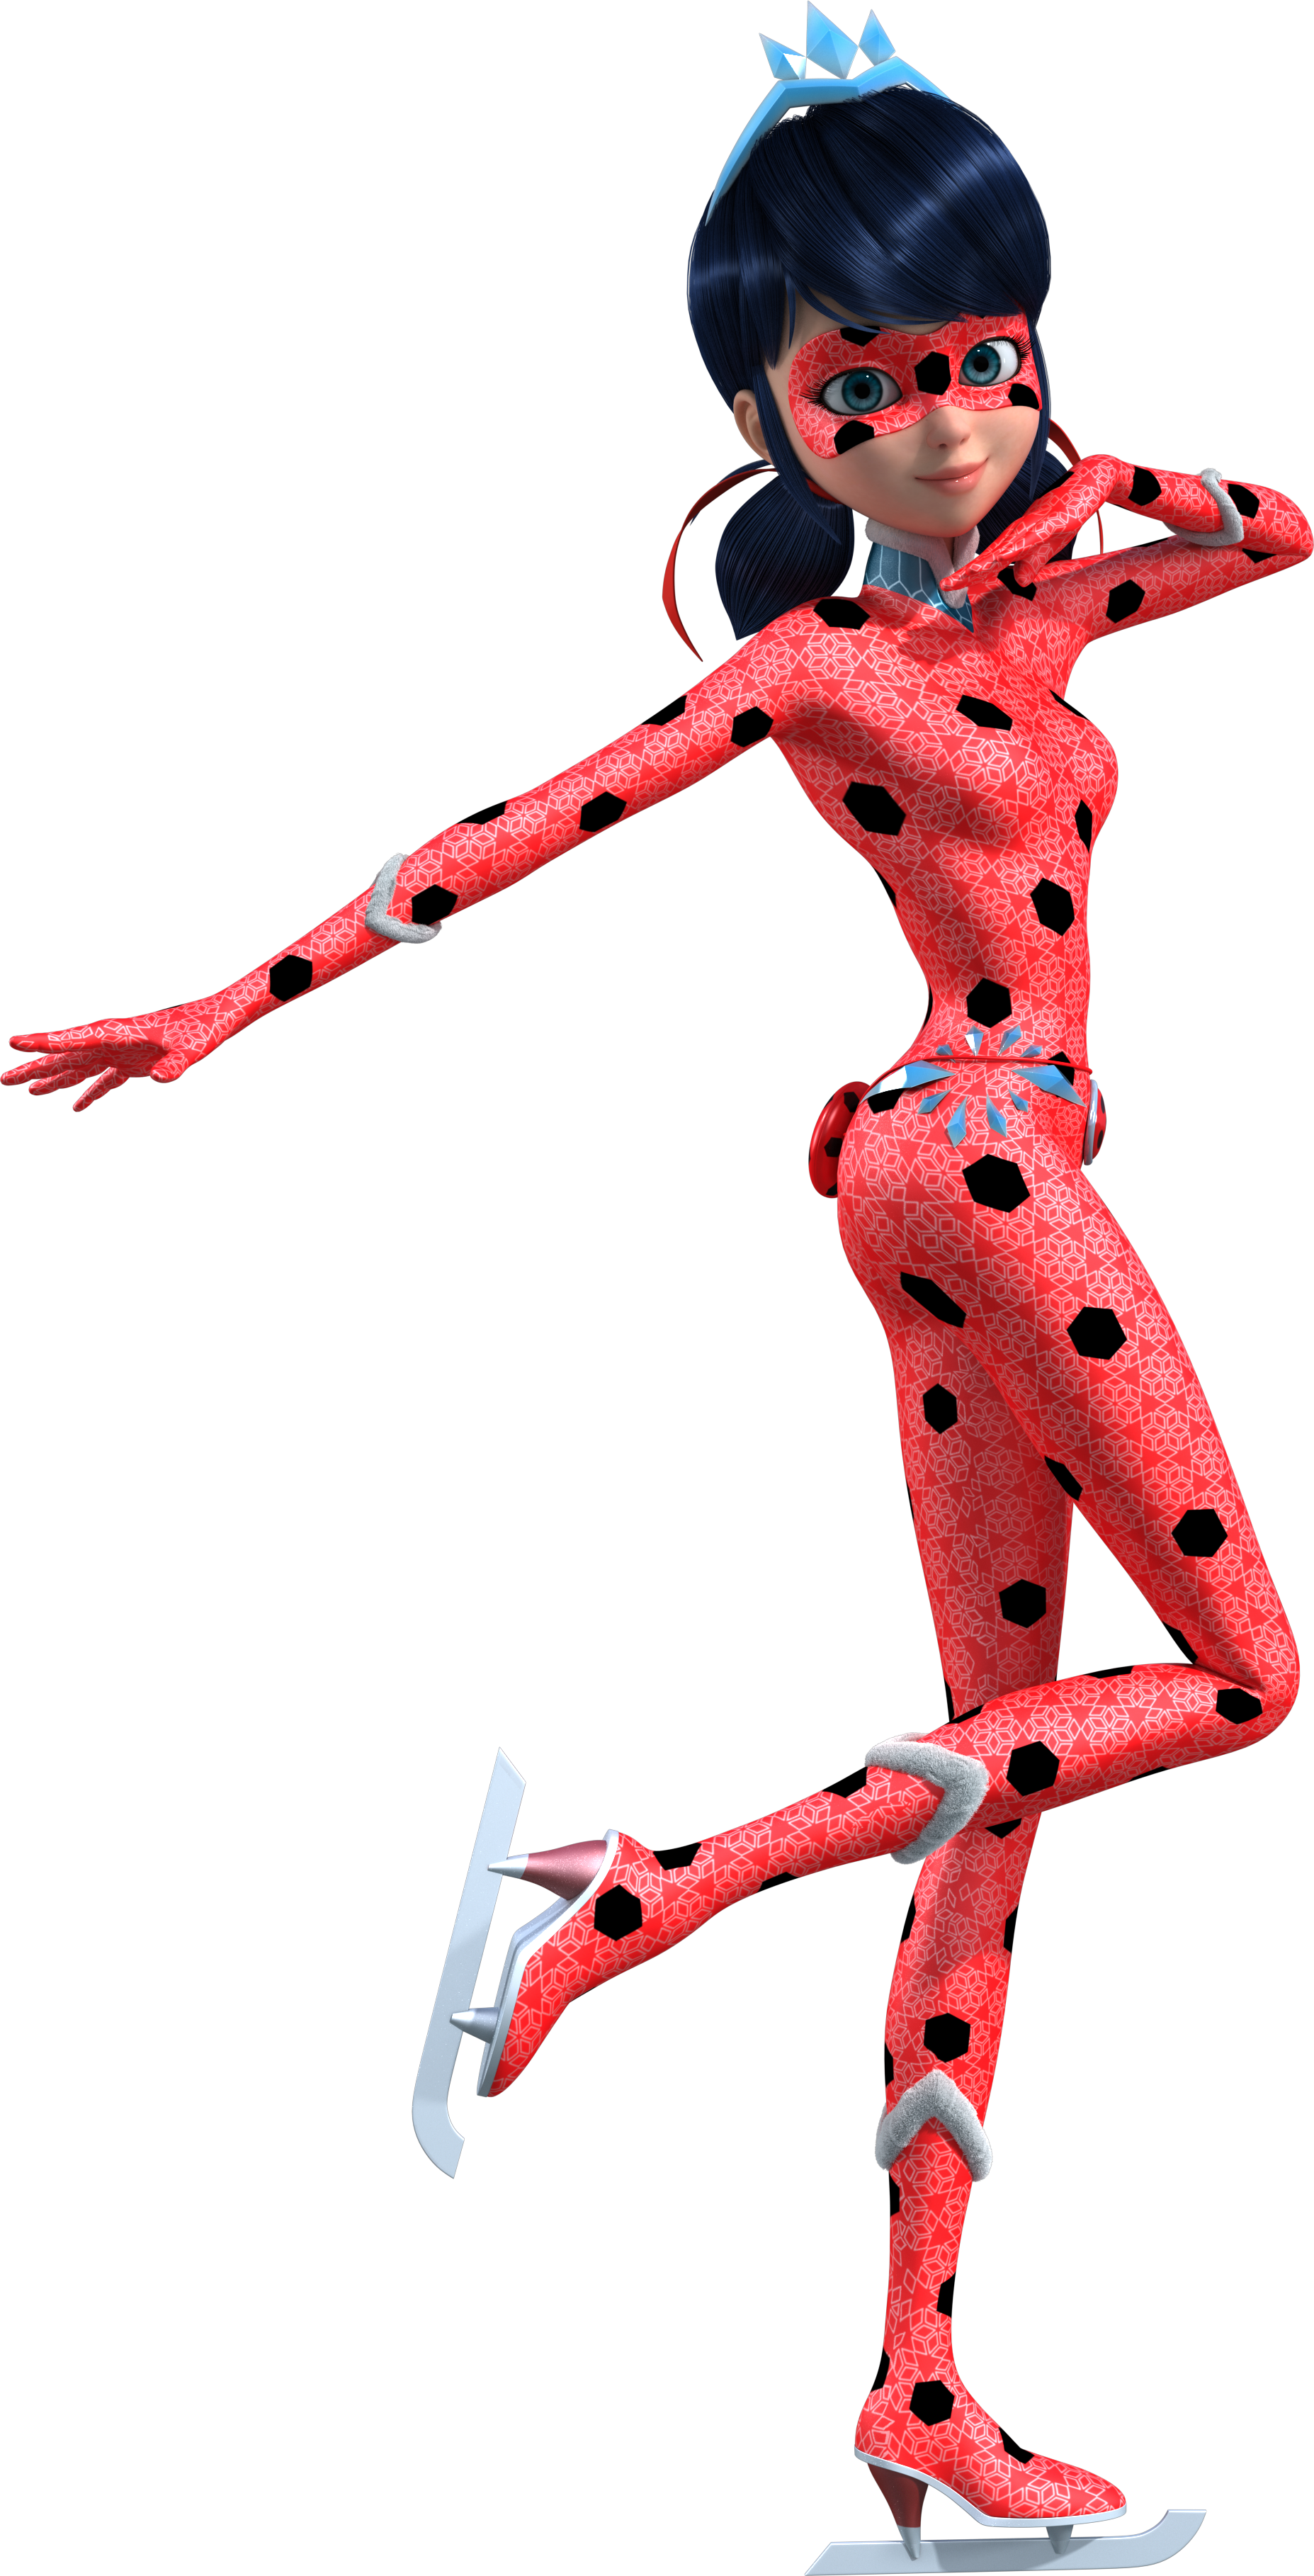 Ladybug (Ladybug & Cat Noir: The Movie), Heroes Wiki